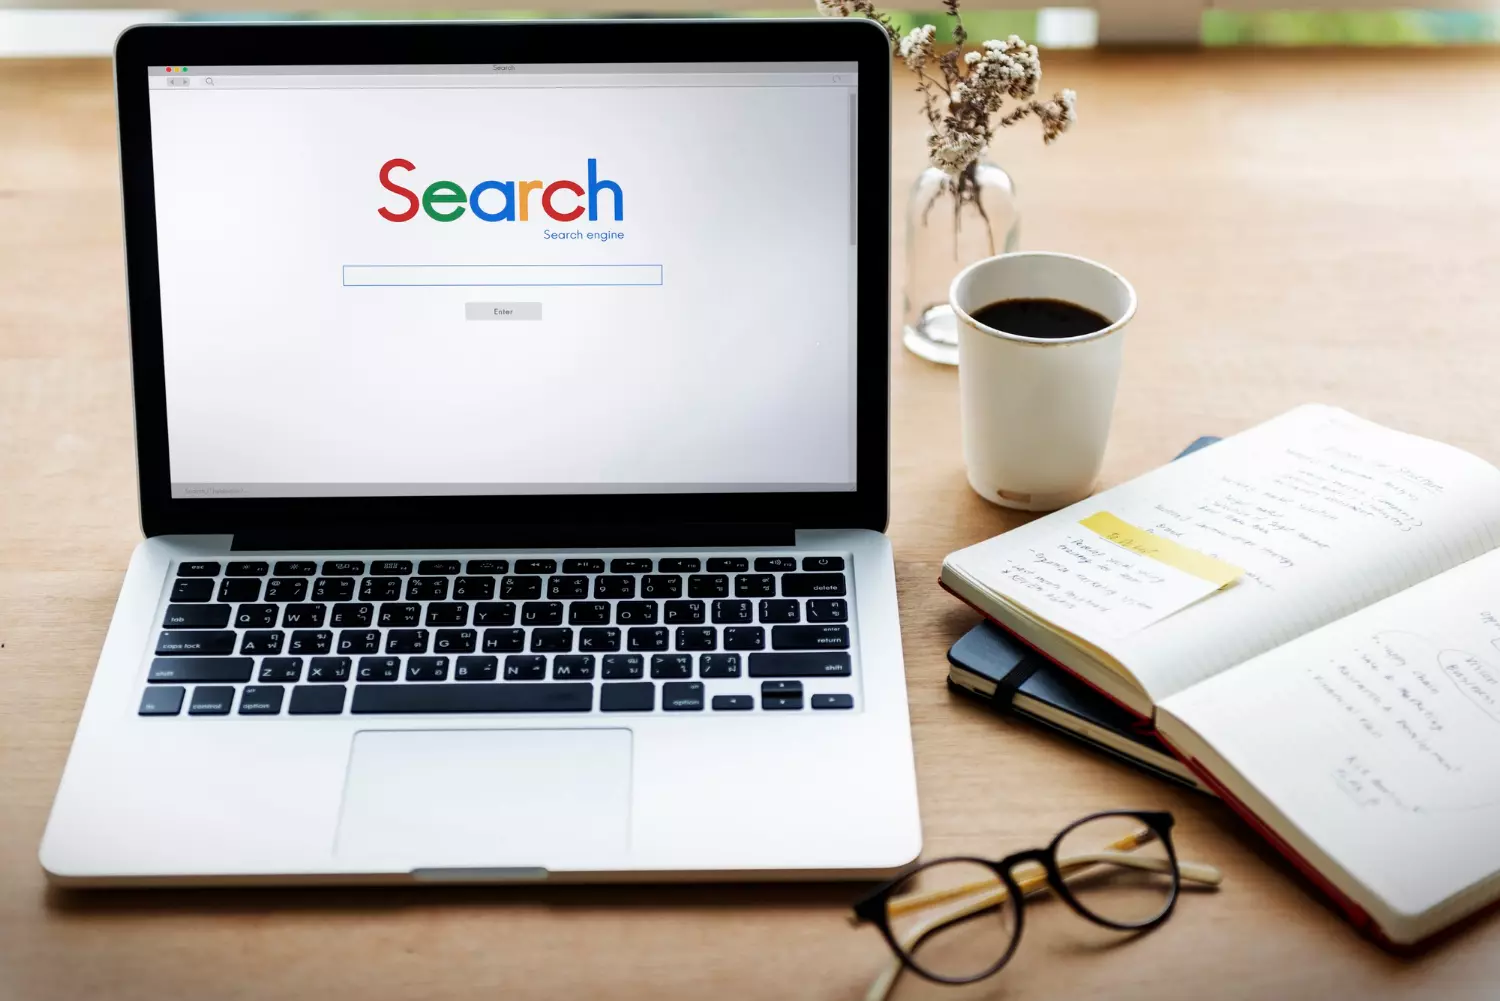 Tela de Busca do Google com o Nome Search. - As palavras-chave são um elemento fundamental no marketing digital e na otimização de mecanismos de busca (SEO)